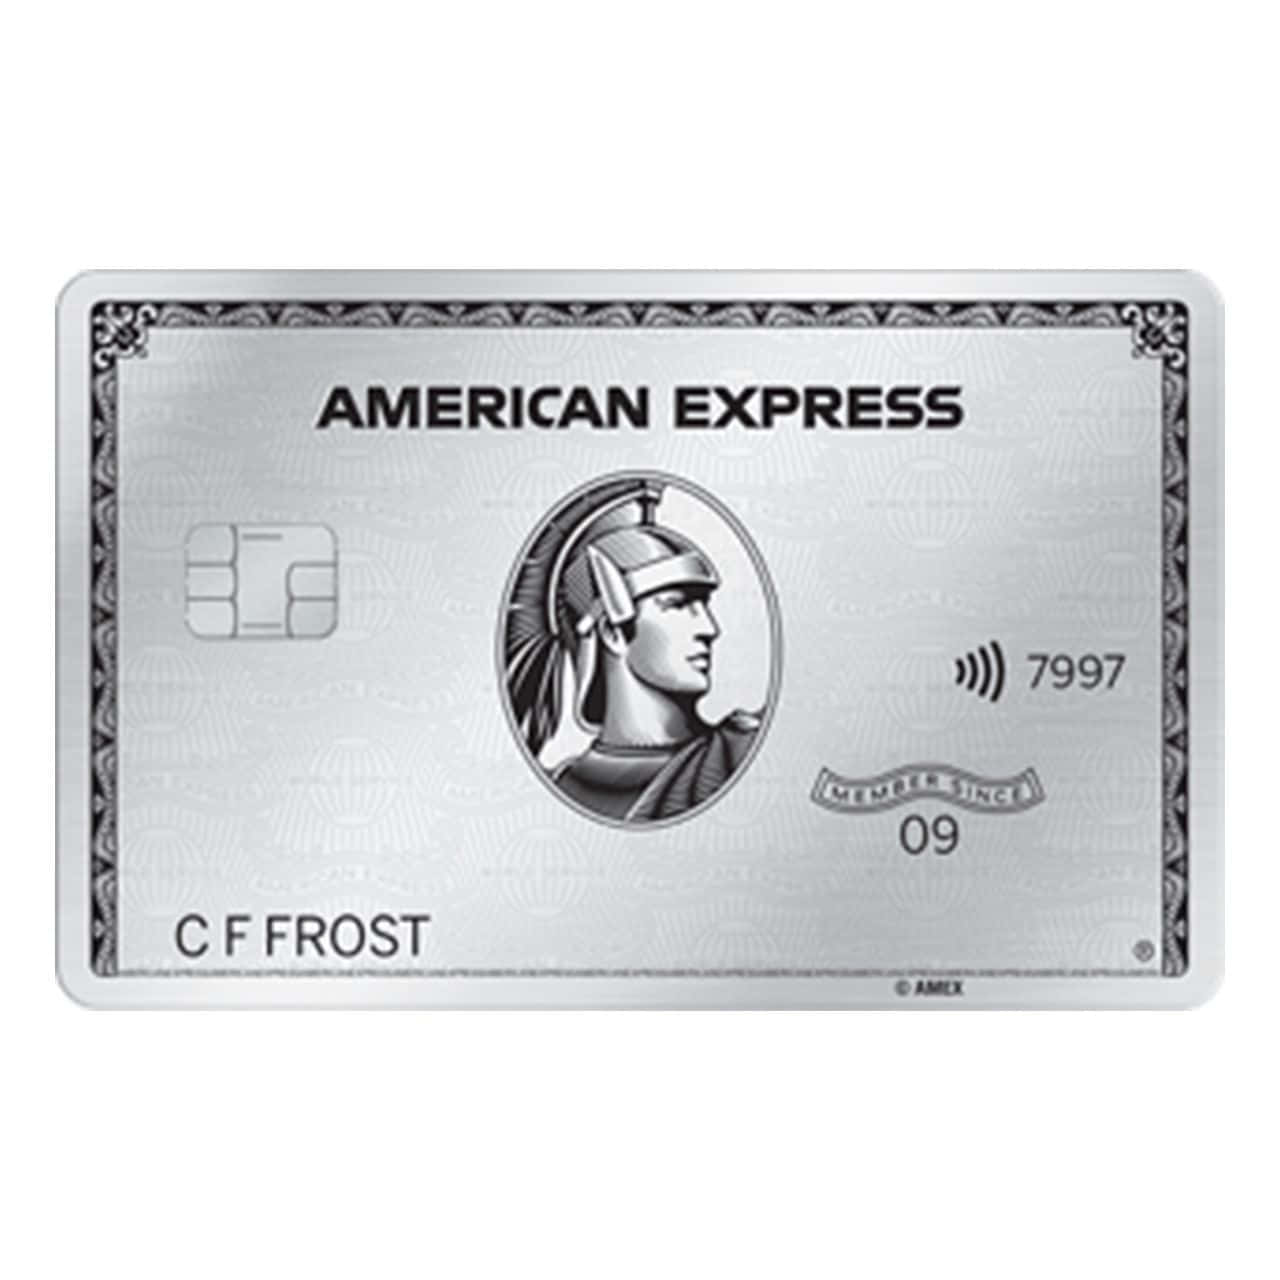 Fühlensie Sich Sicher Mit American Express